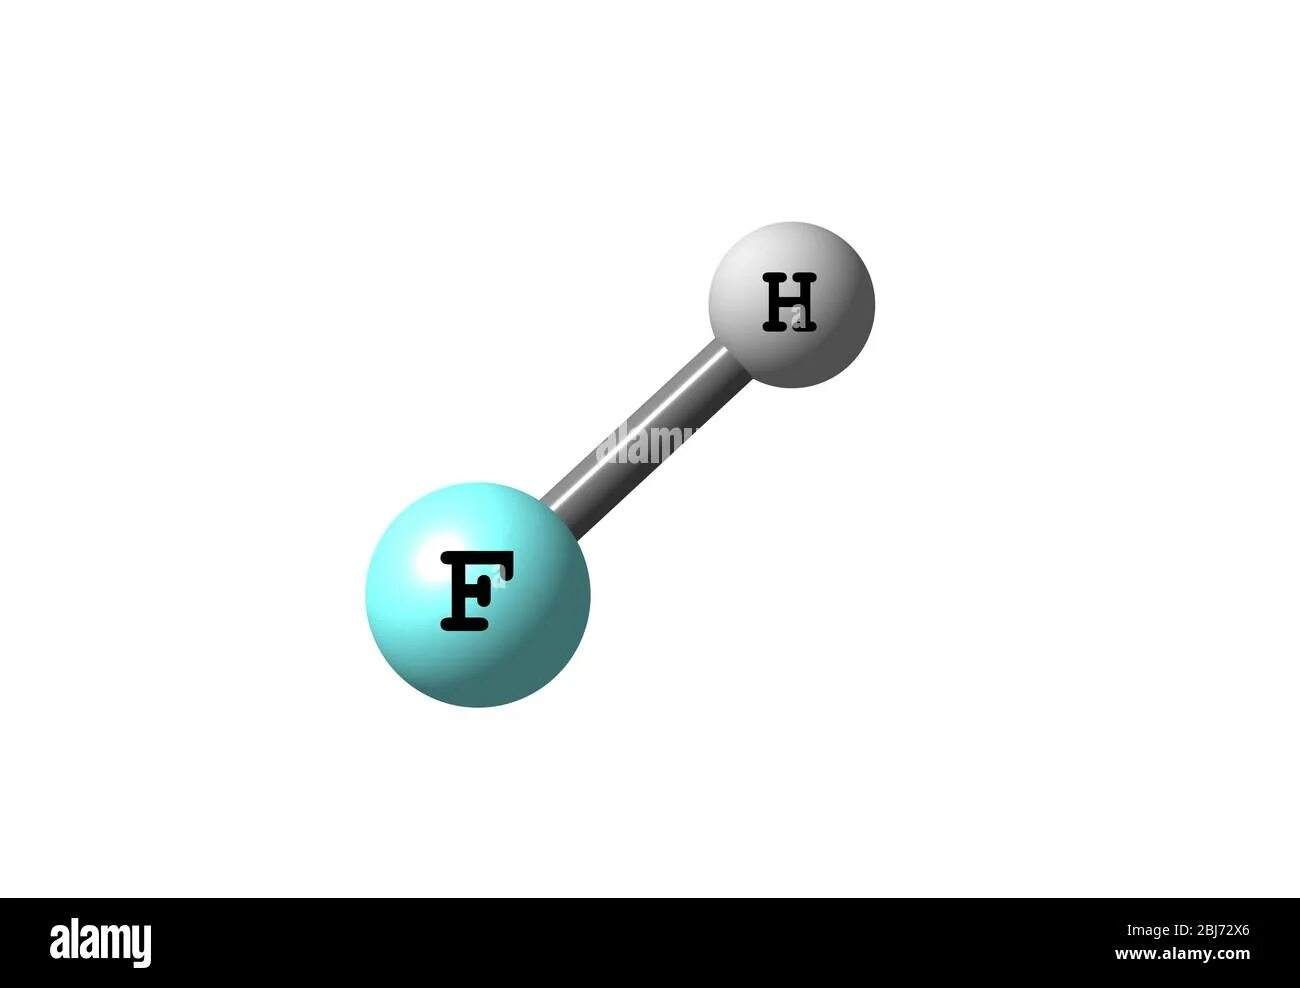 Химическое соединение hf